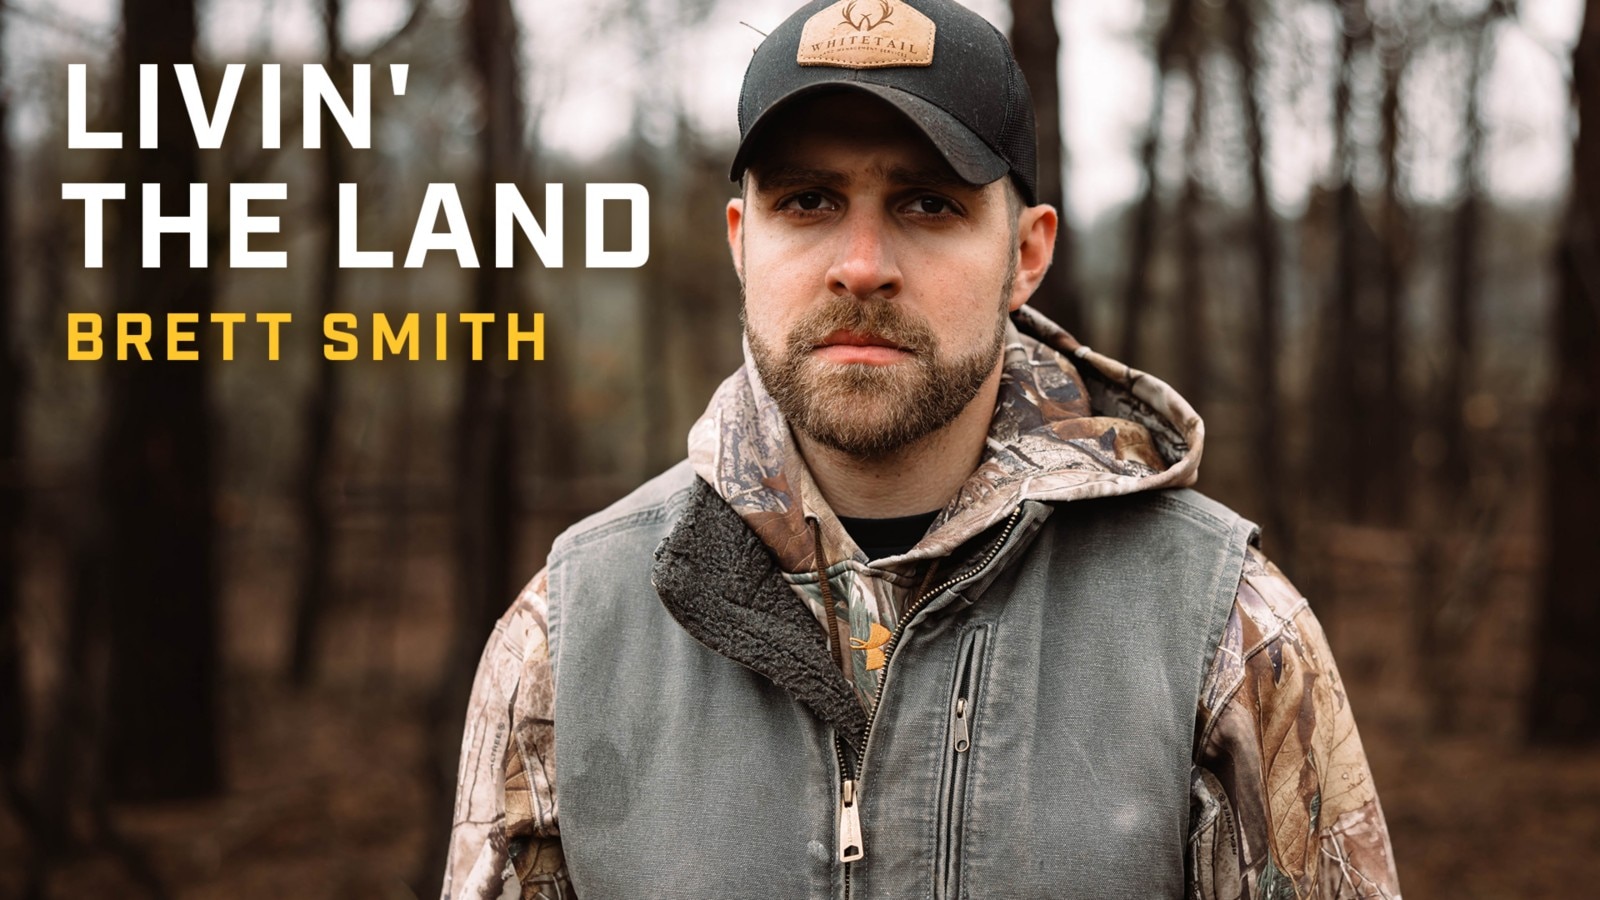 Livin' the Land: Brett Smith episode tile